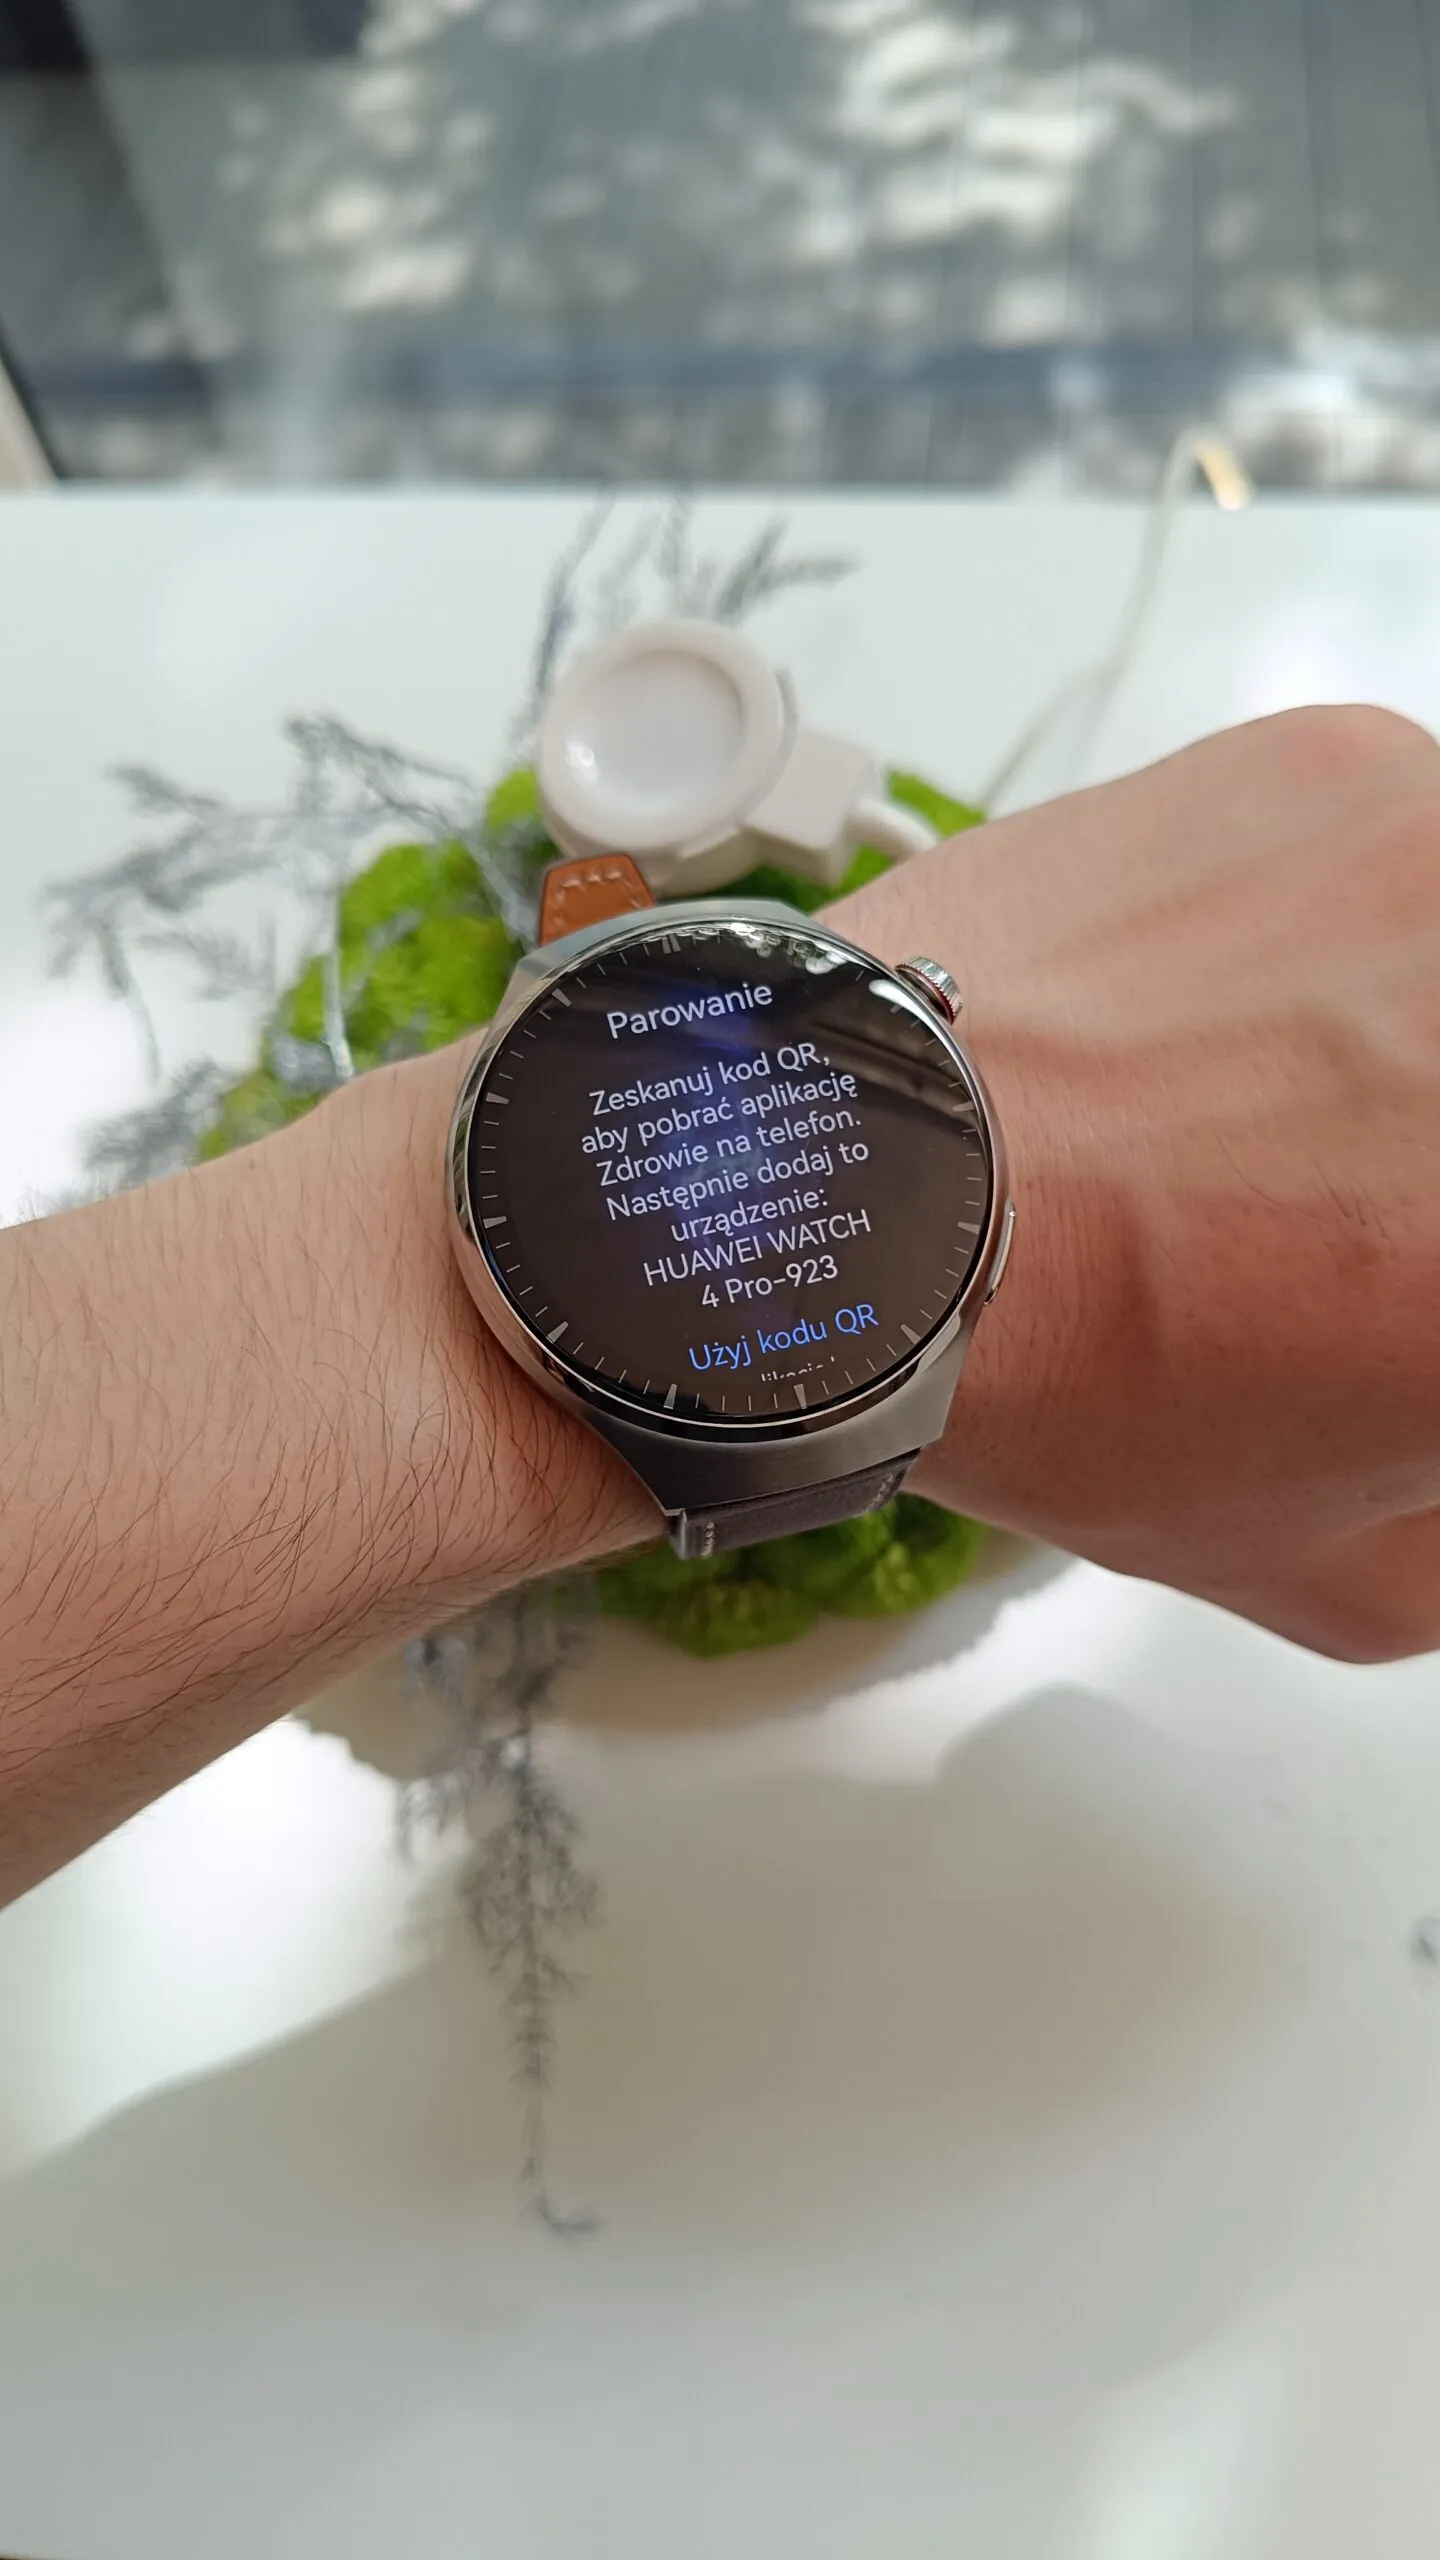 Reseña del Huawei Watch 4 Pro: un reloj increíble pero con un defecto